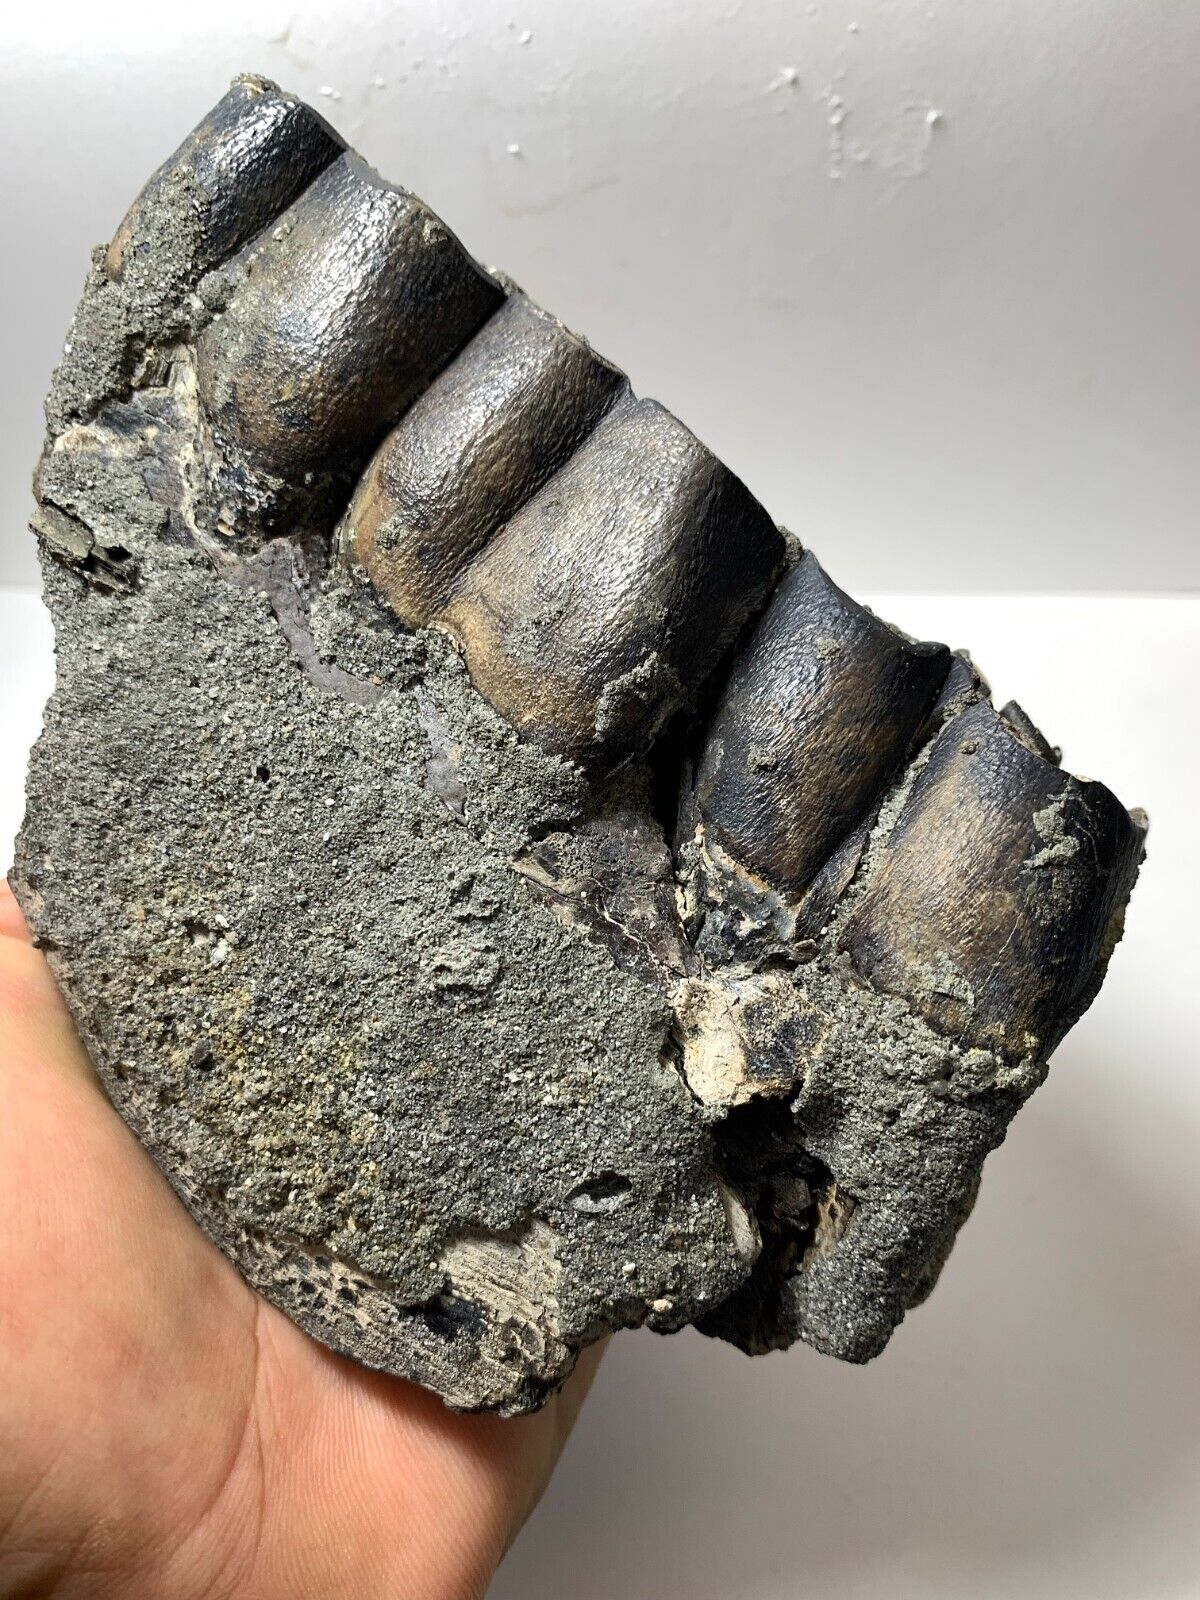 Colorful Aceratherium Primitive fossil tooth Rare Amazing genuine